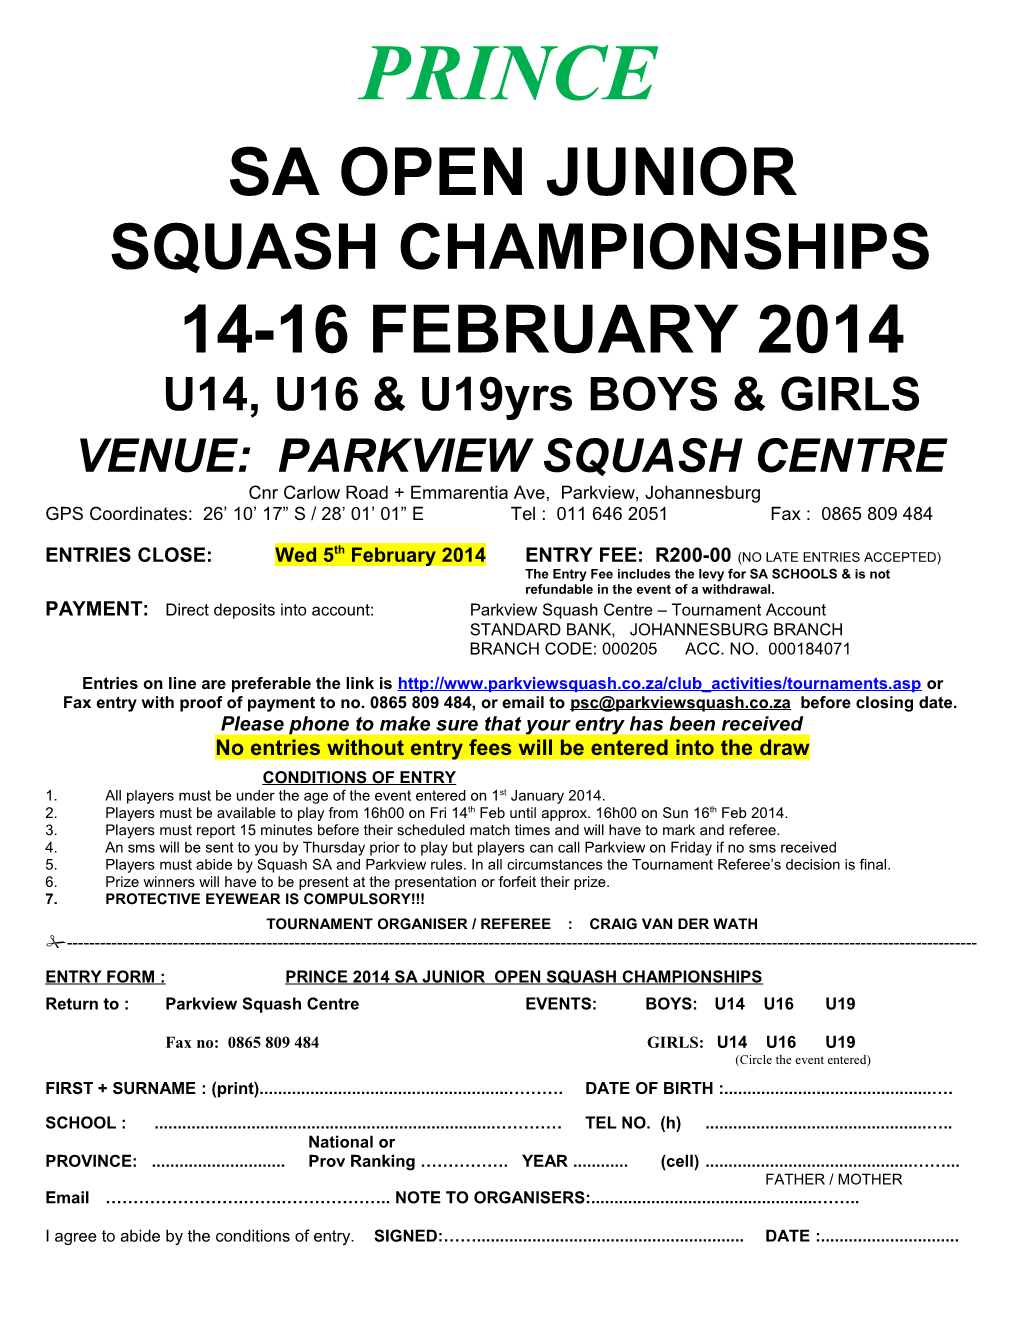 Venue: Parkview Squash Centre